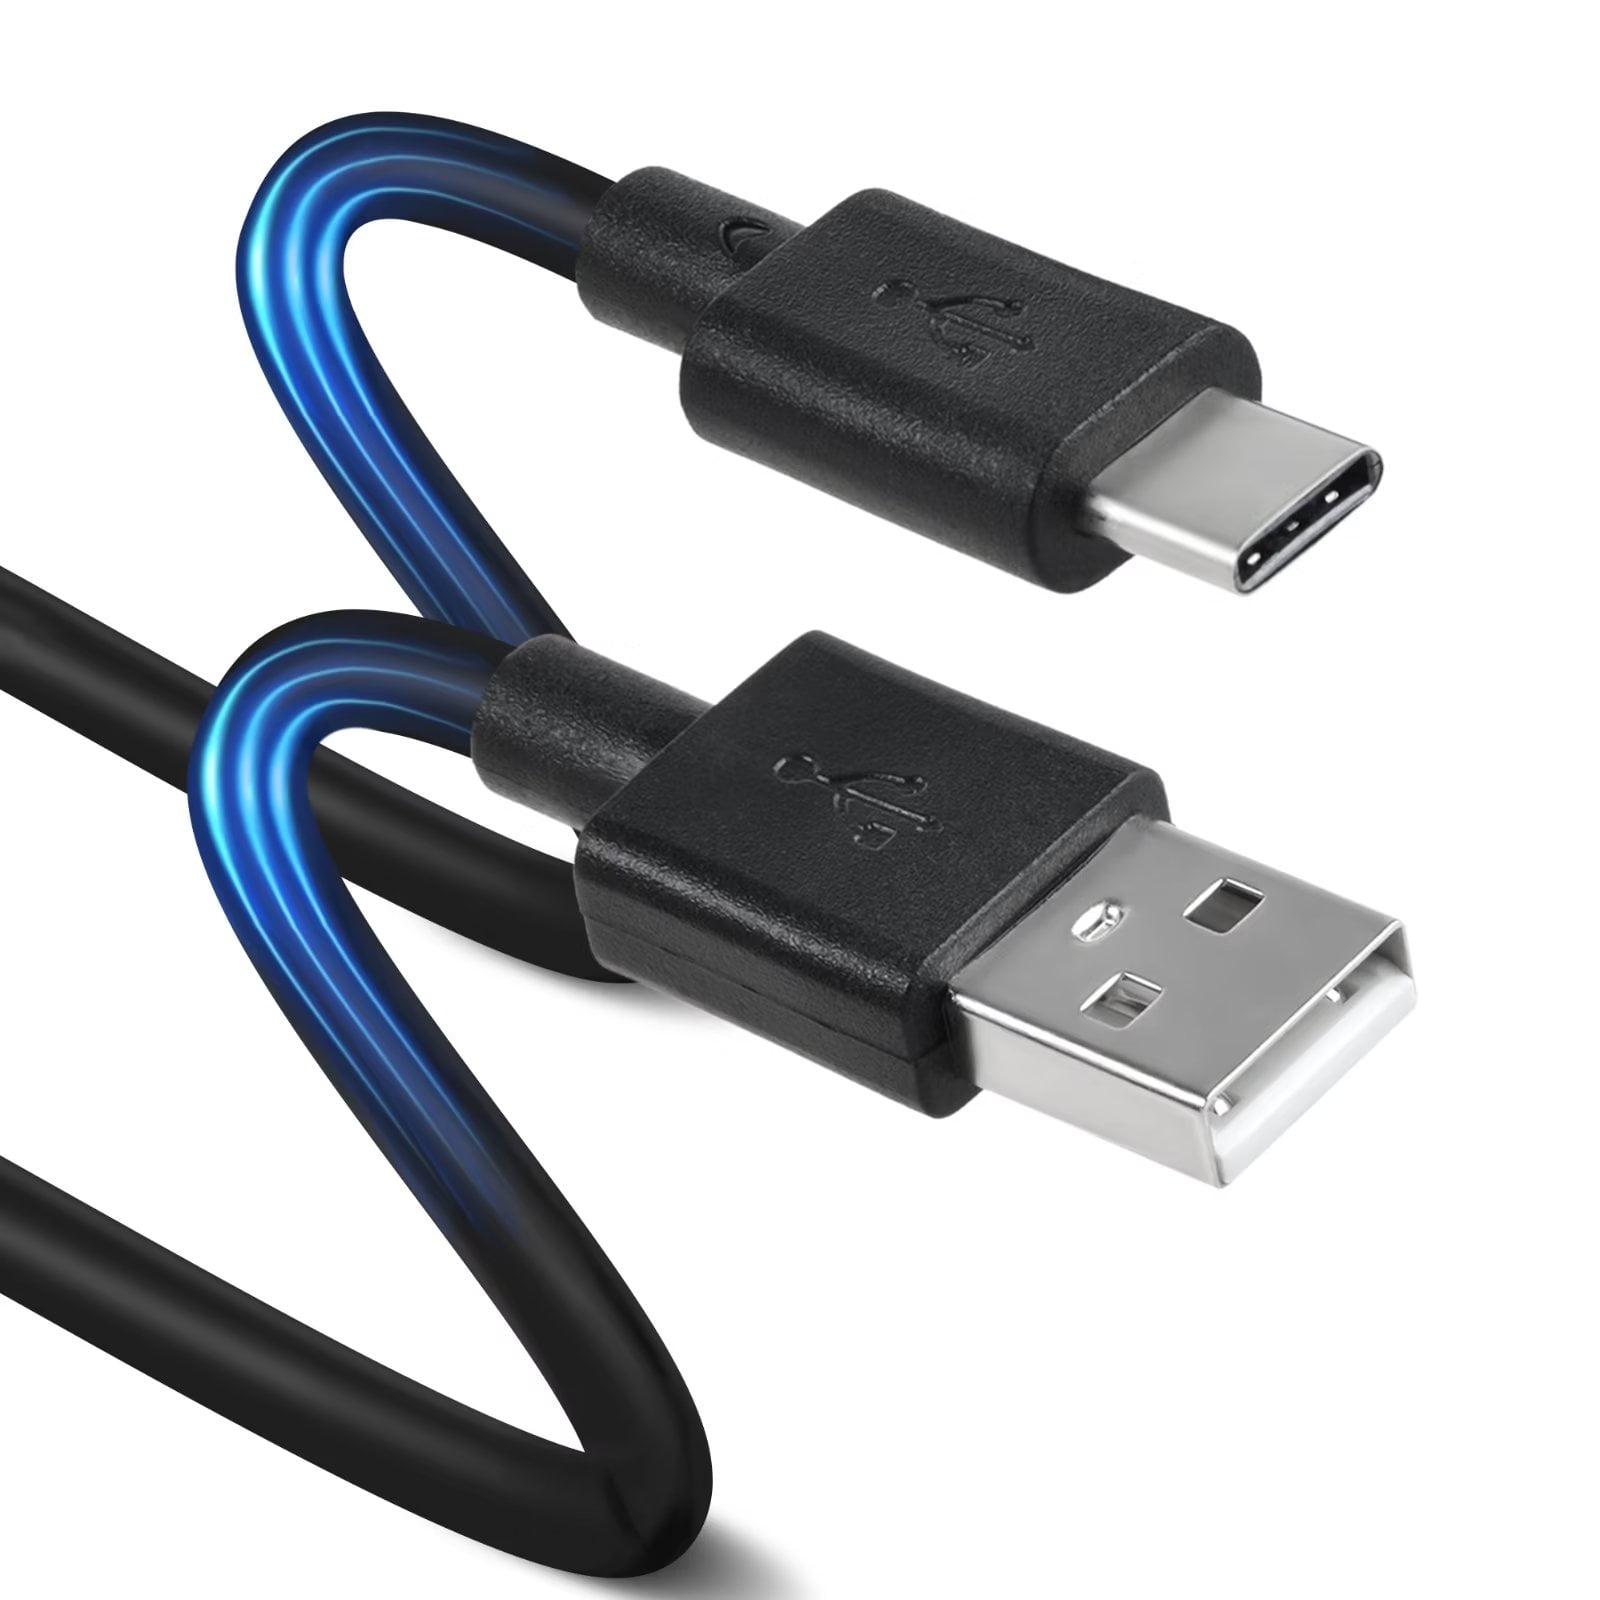 De daadwerkelijke Uit Reorganiseren CJP-Geek Black USB-C Type-C PSU Charger Cable Cord Lead for Sony Xperia X Compact  F5321 - Walmart.com